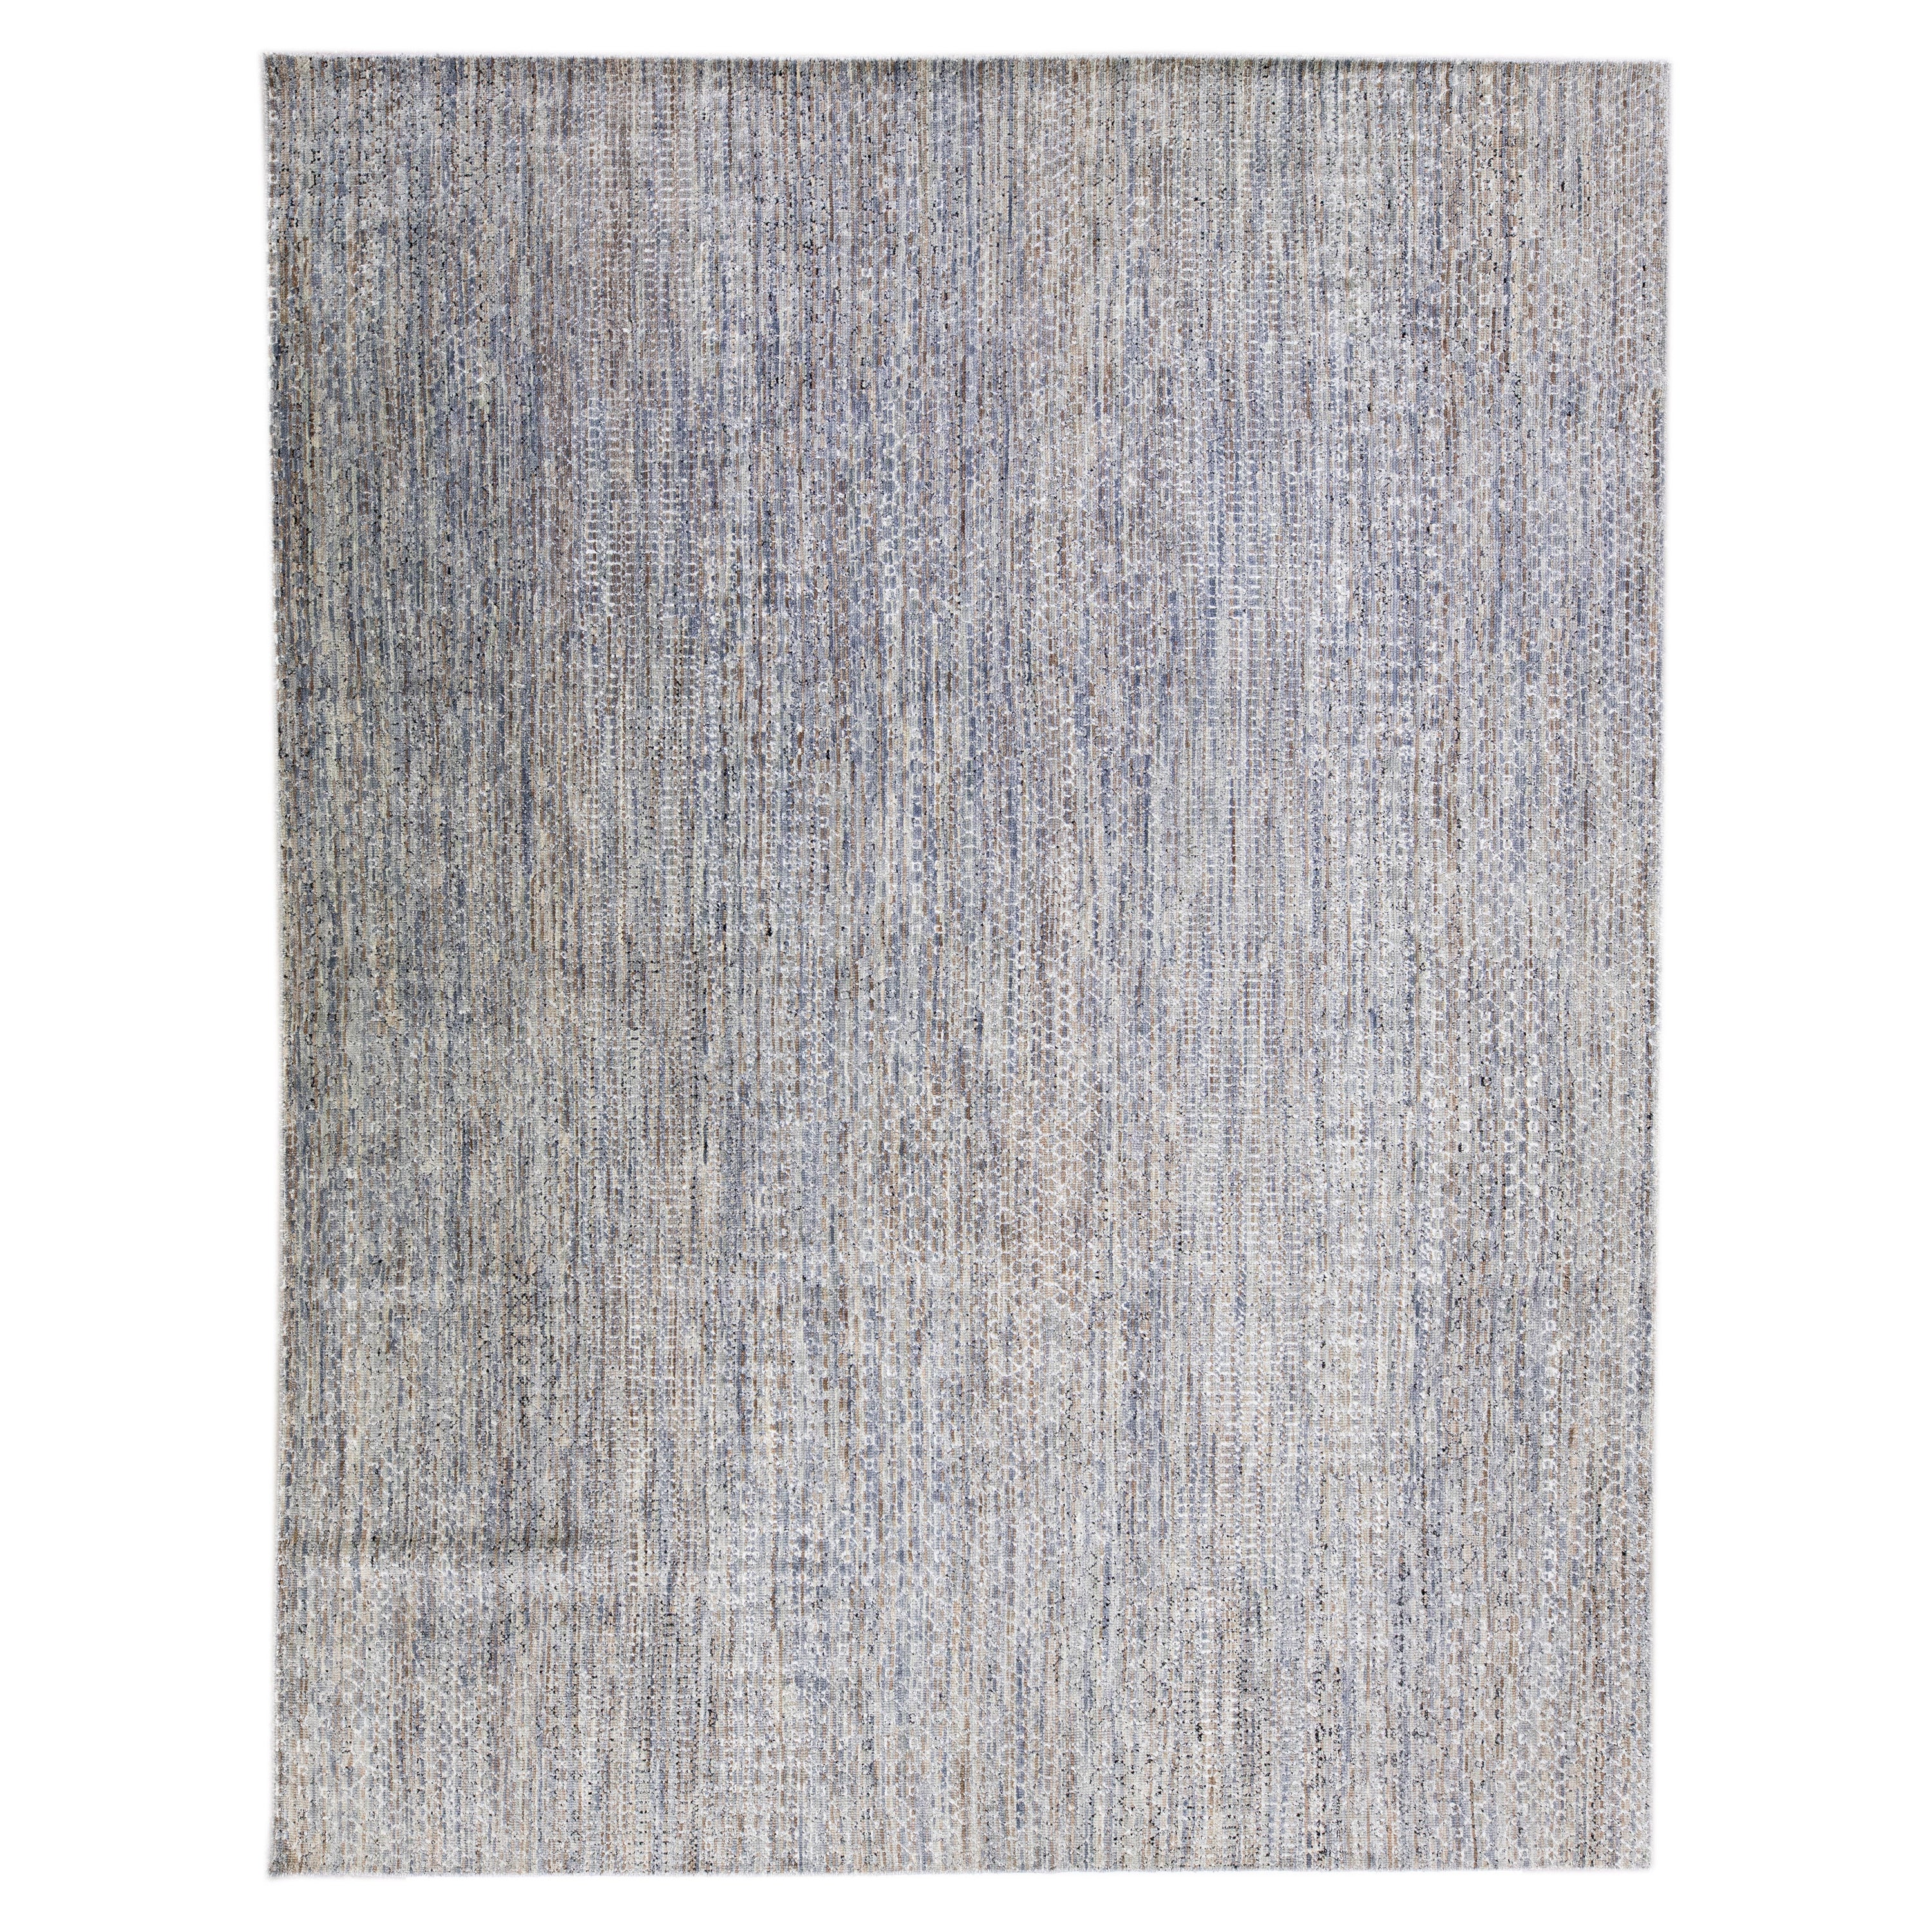 Tapis moderne en laine gris Savannah fait à la main avec motif géométrique